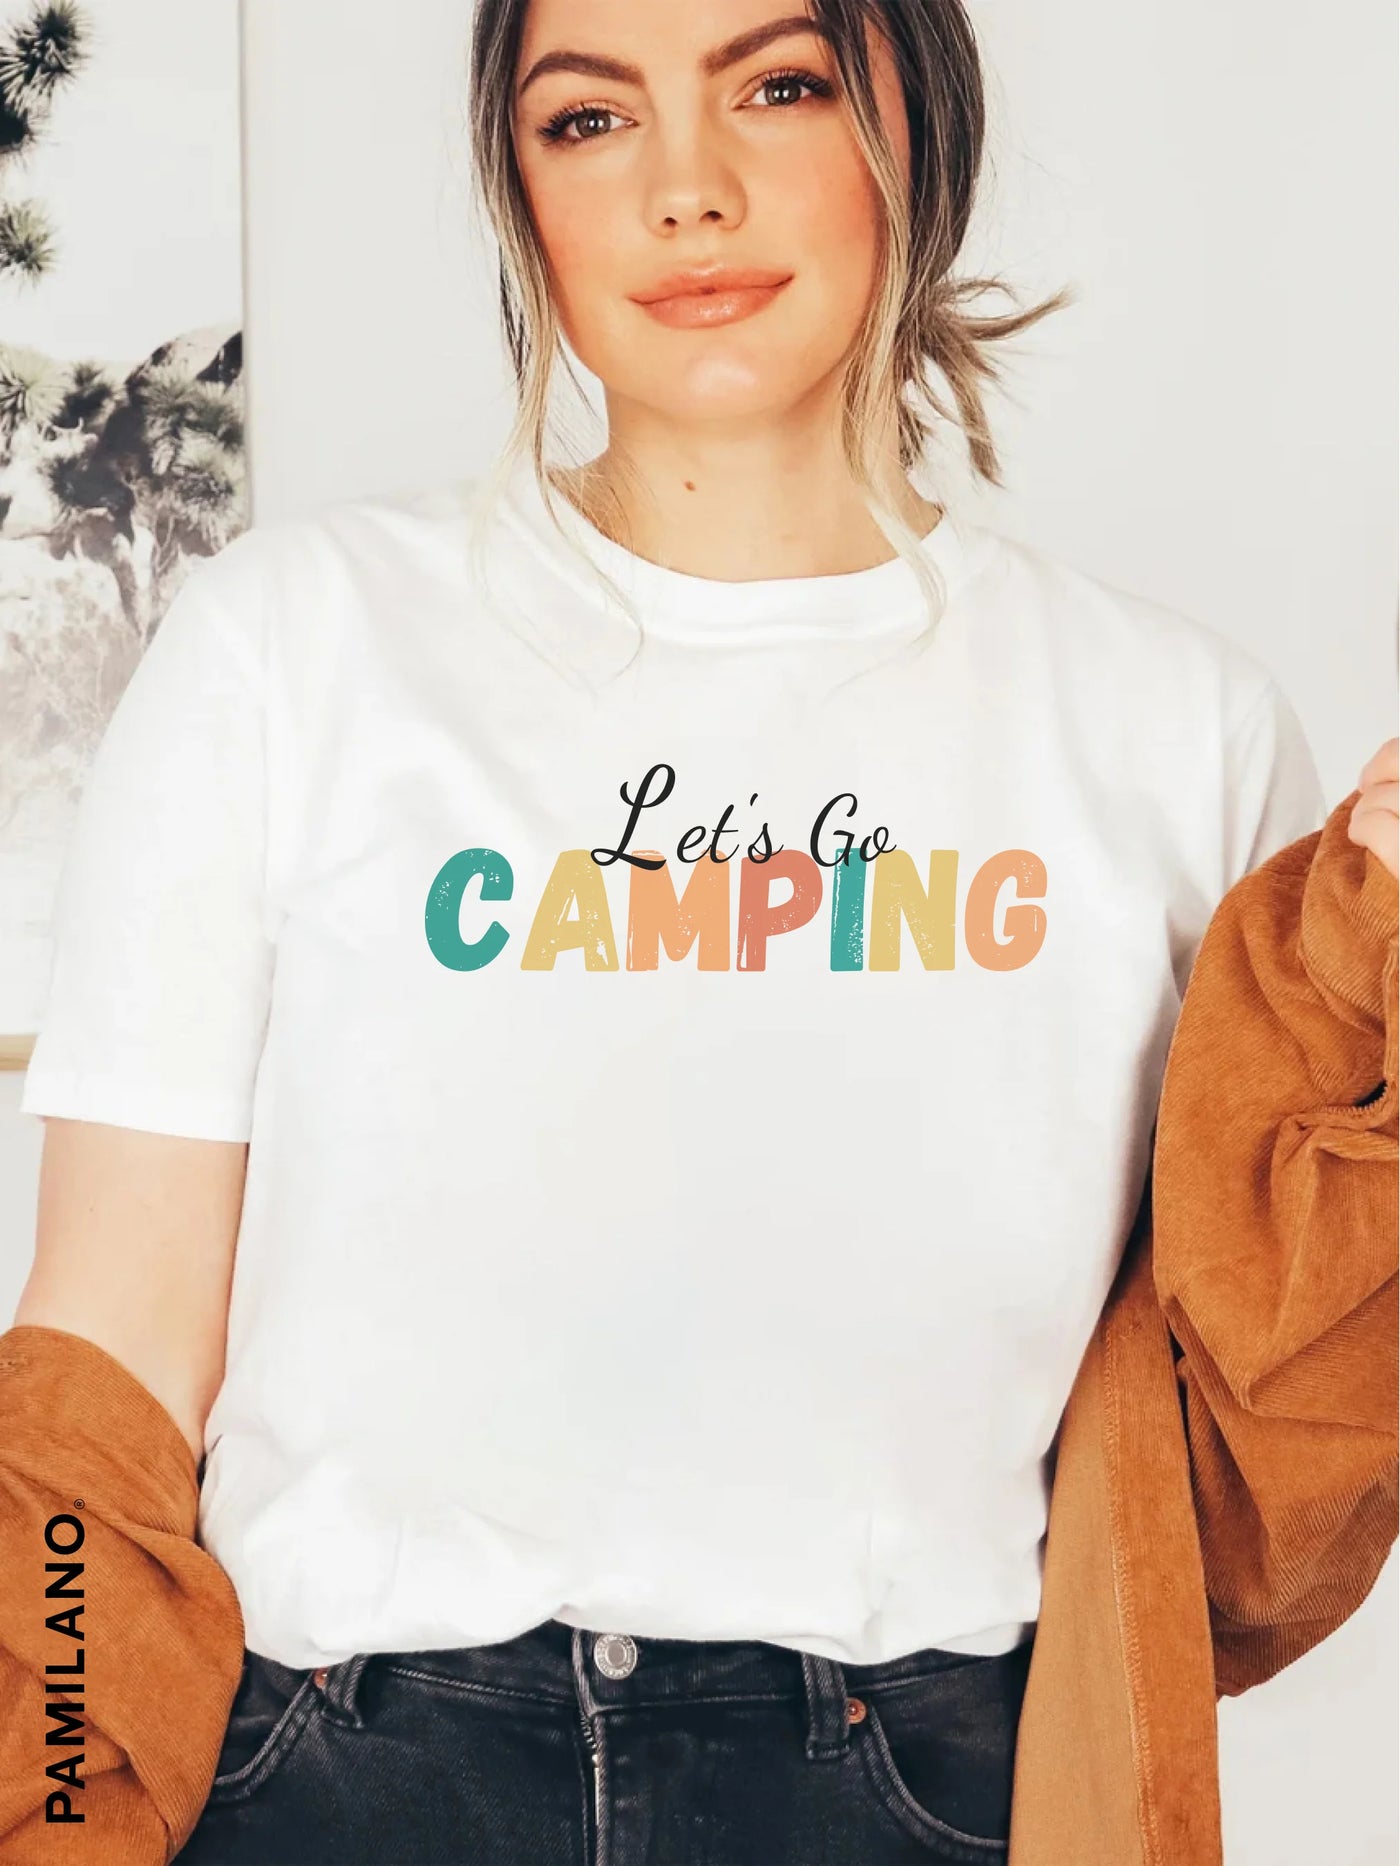 Camping t-shirt